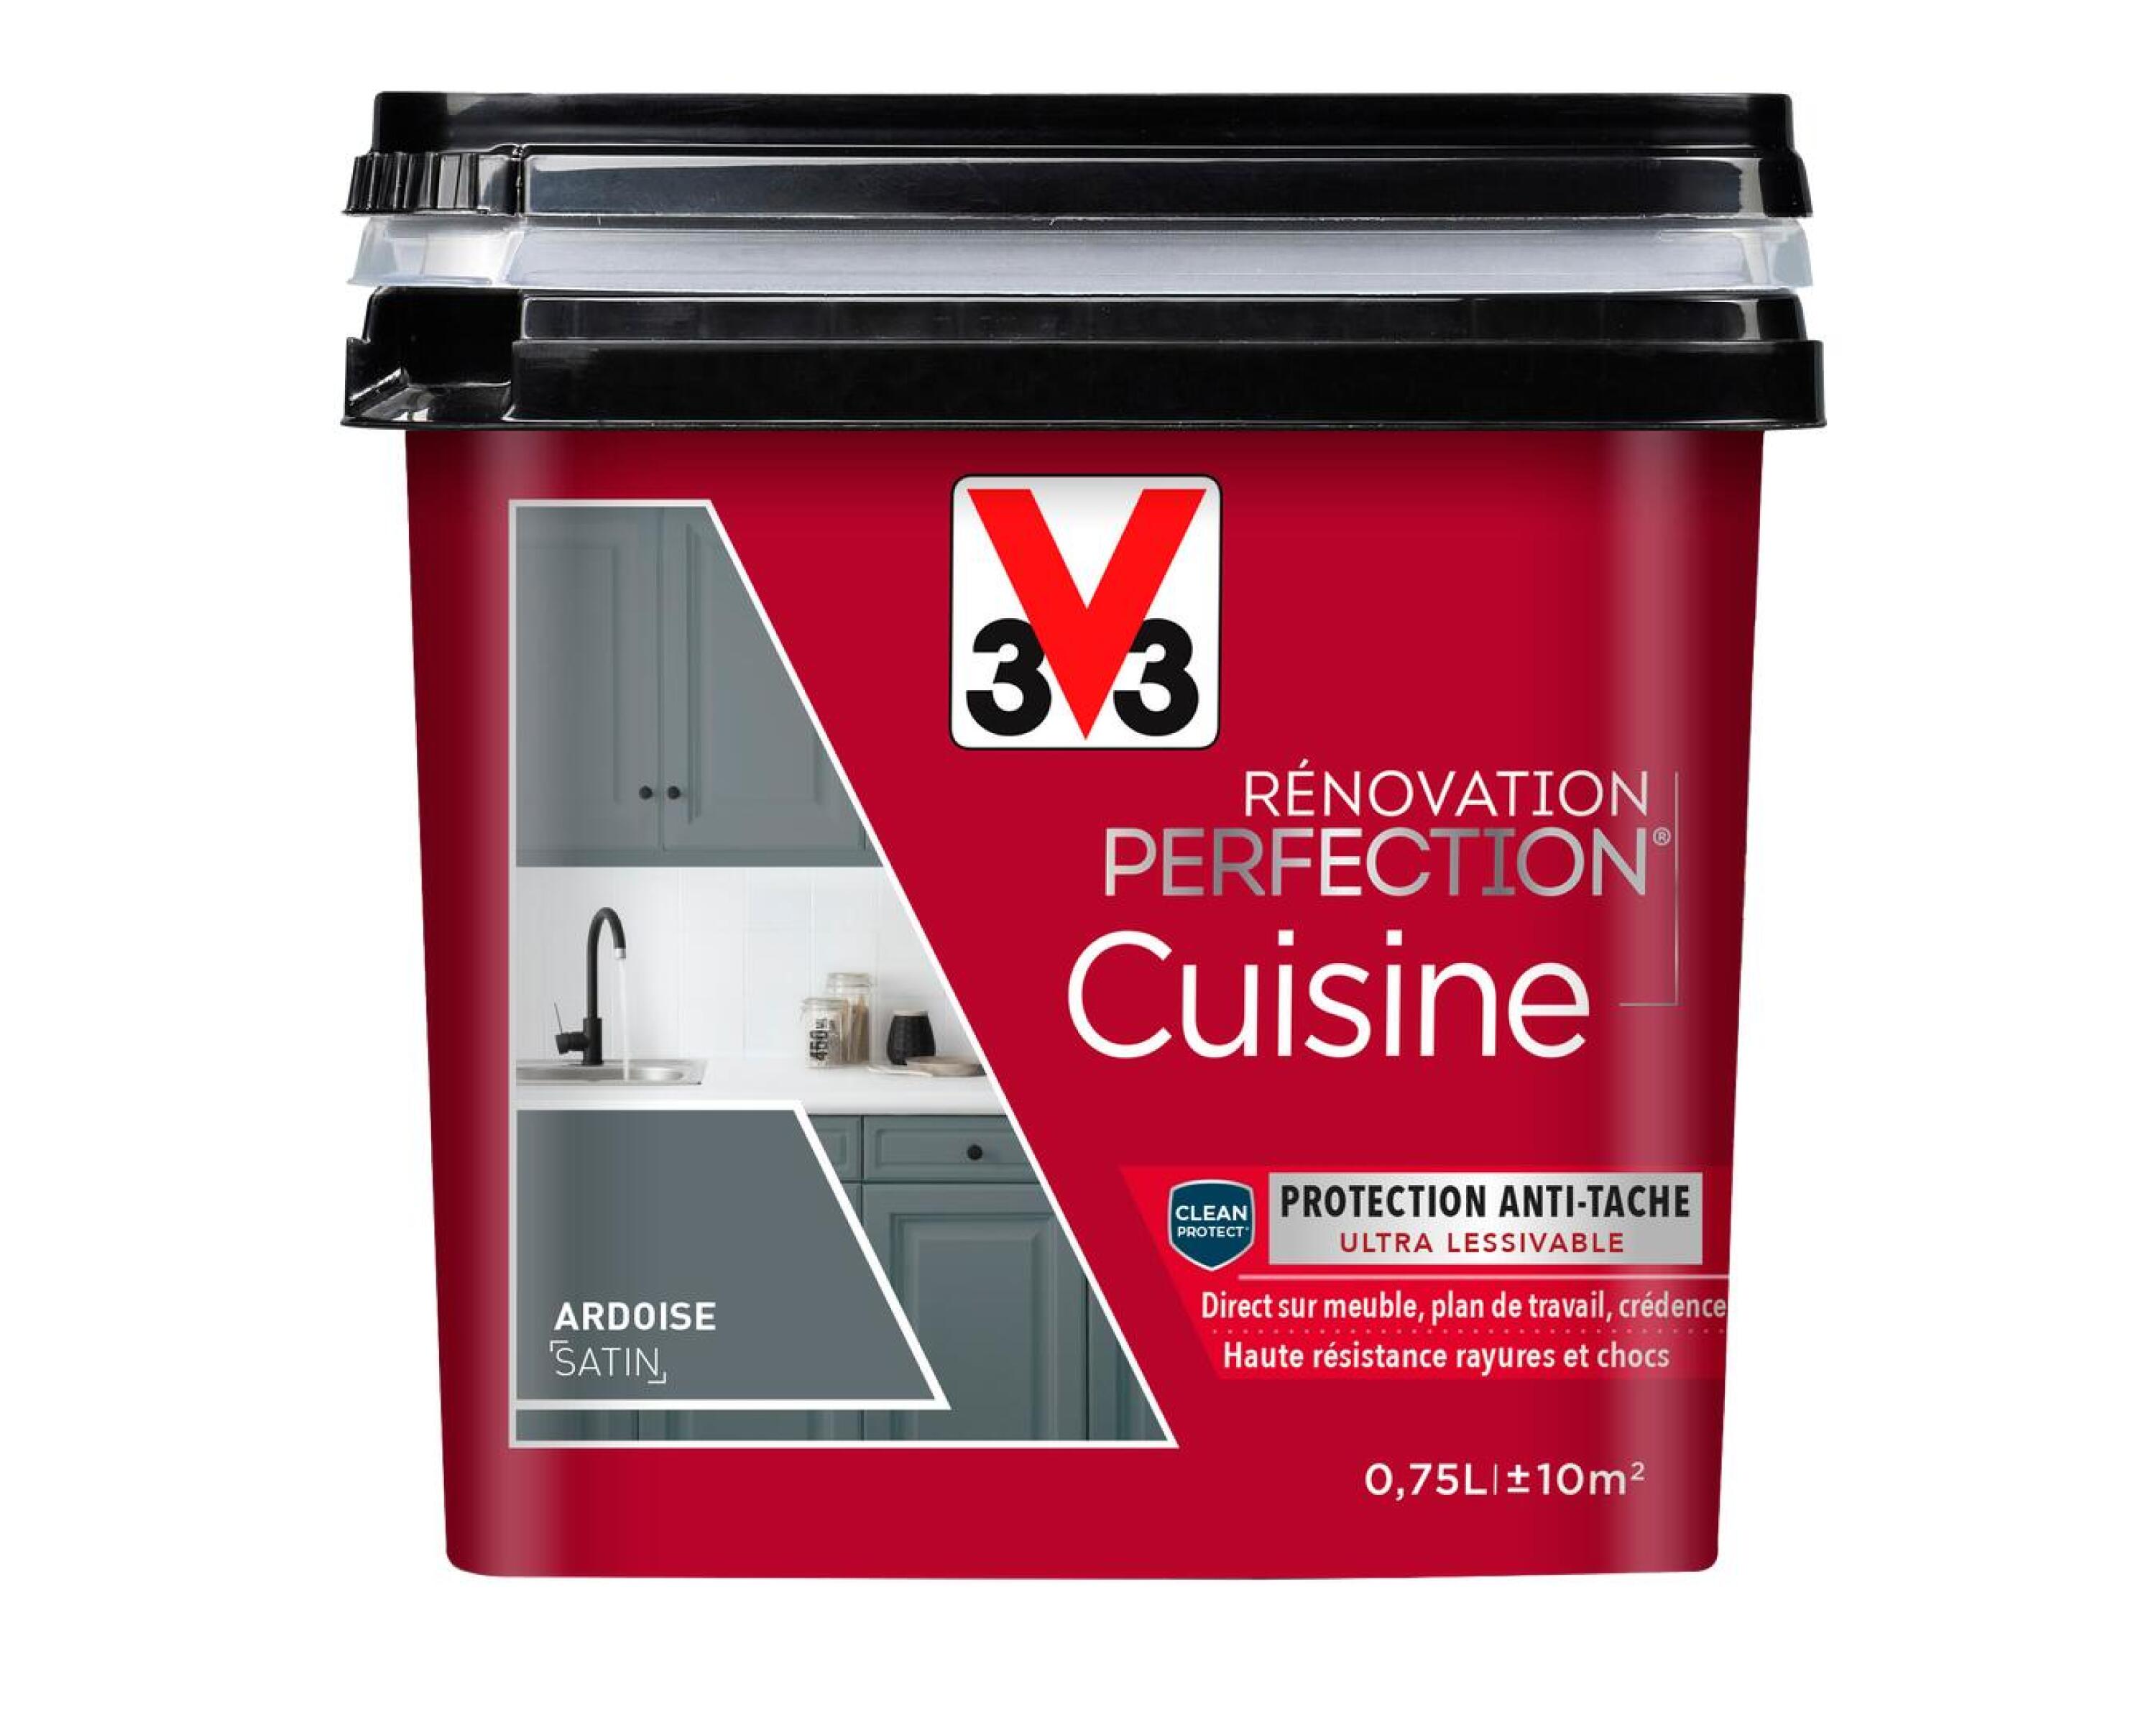 Peinture rénovation cuisine Perfection ardoise satin 0,75l - V33